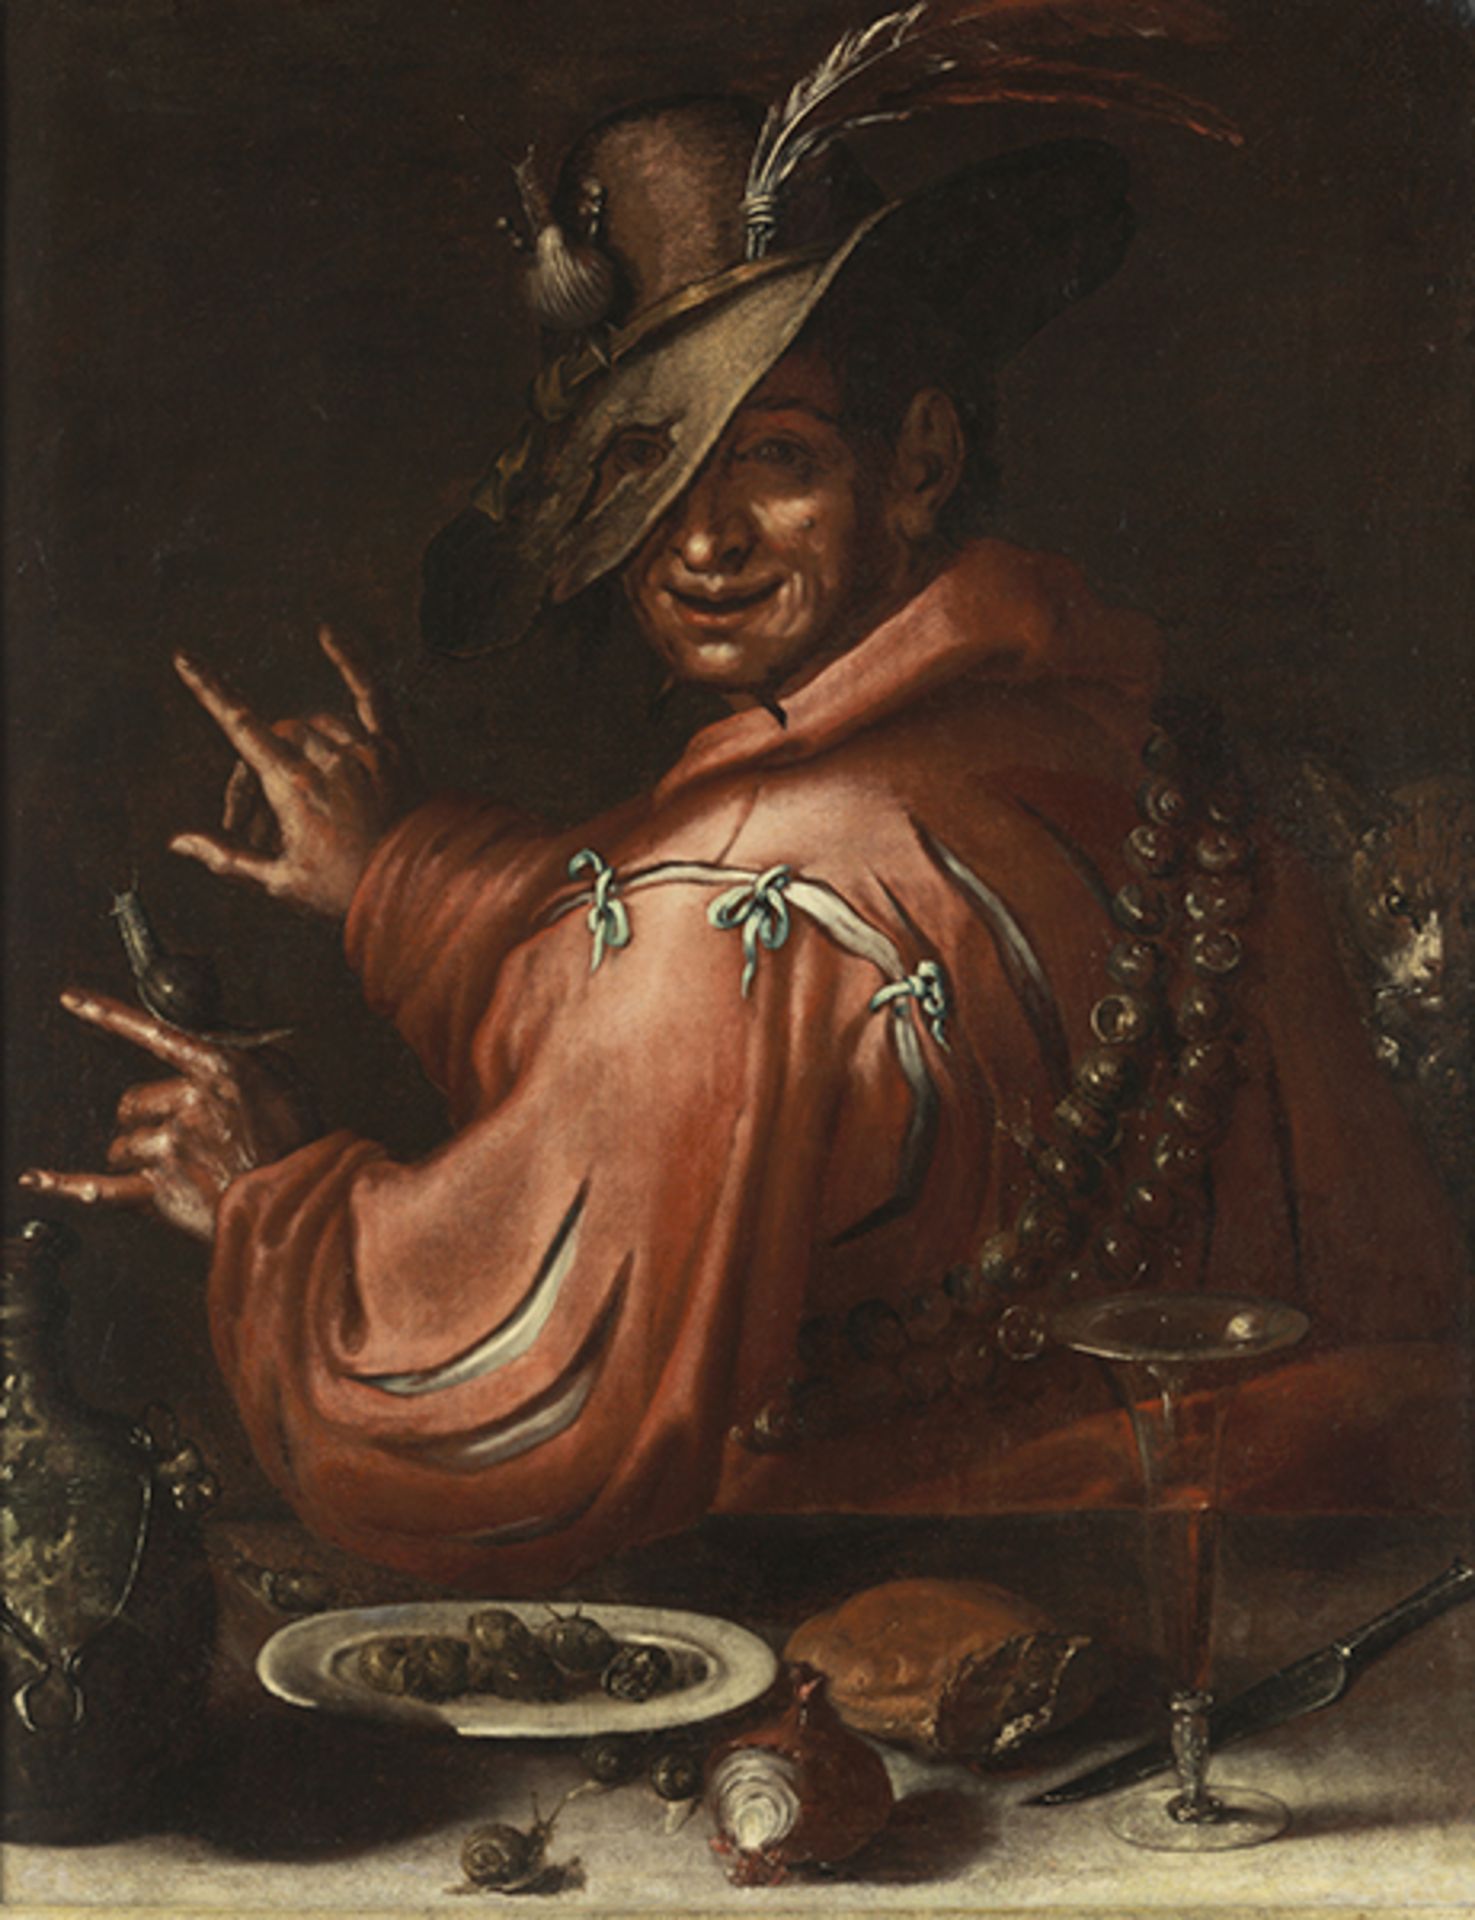 Maler des 17. Jahrhunderts LA BUONA VENTURA (DAS GLÜCK) Öl auf Leinwand. Doubliert. 95 x 75 cm.